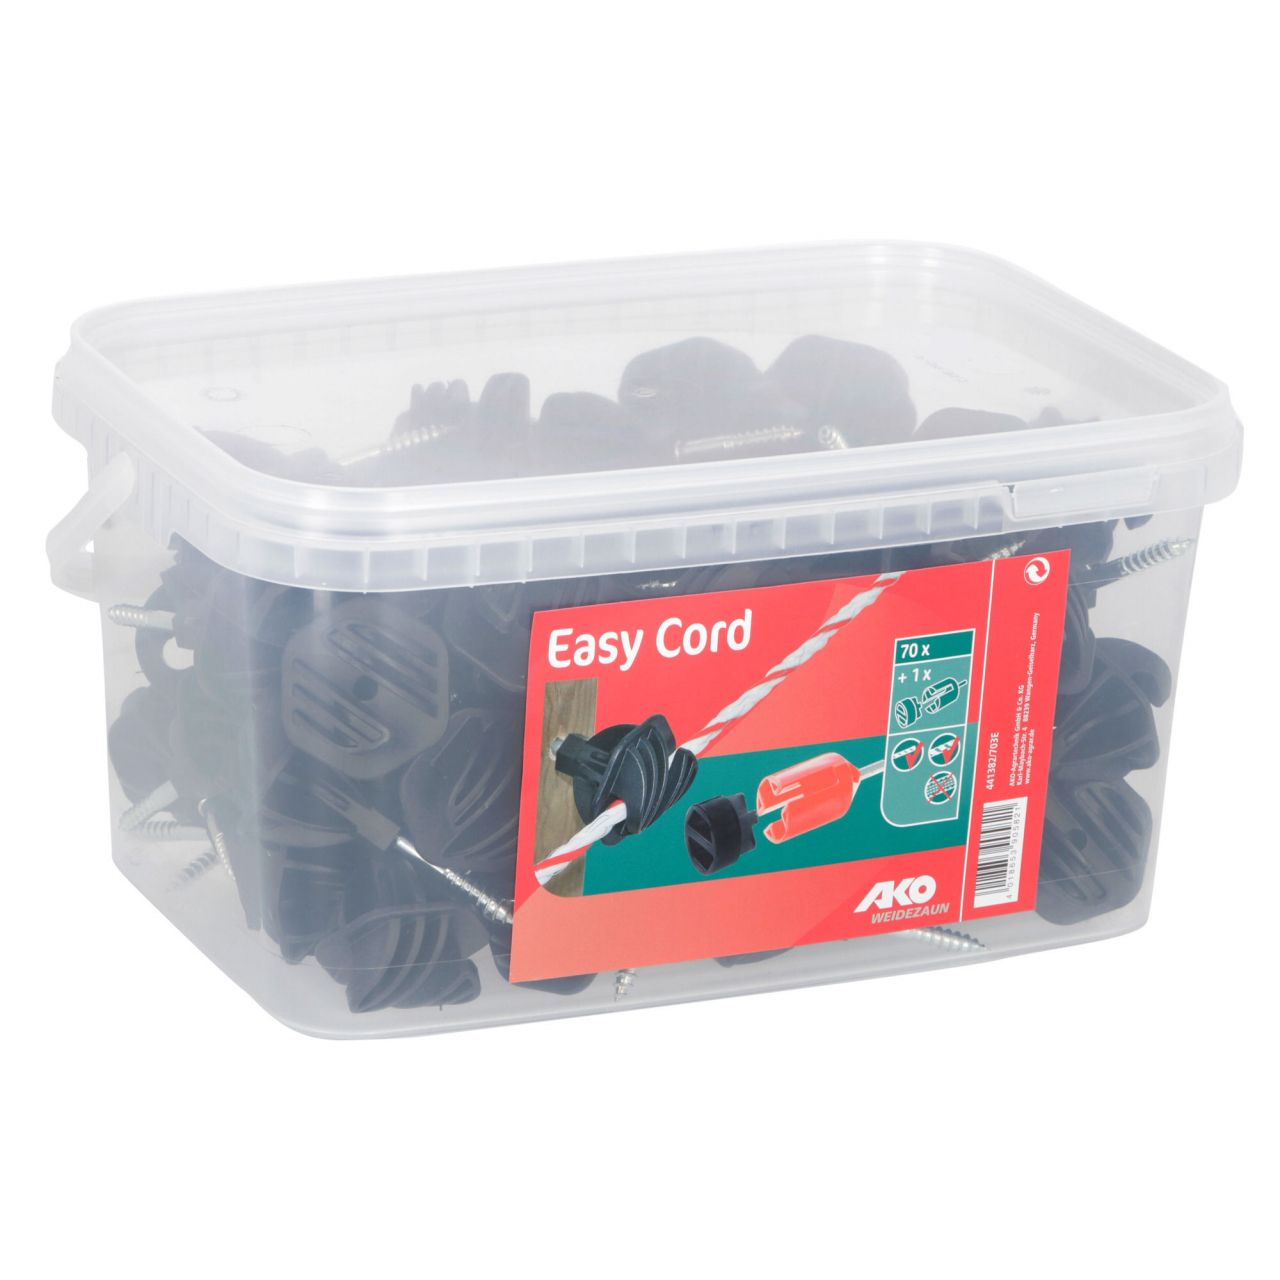 Easy Cord szigetelő villanypásztor vezetékhez - 70 db/doboz + behajtó